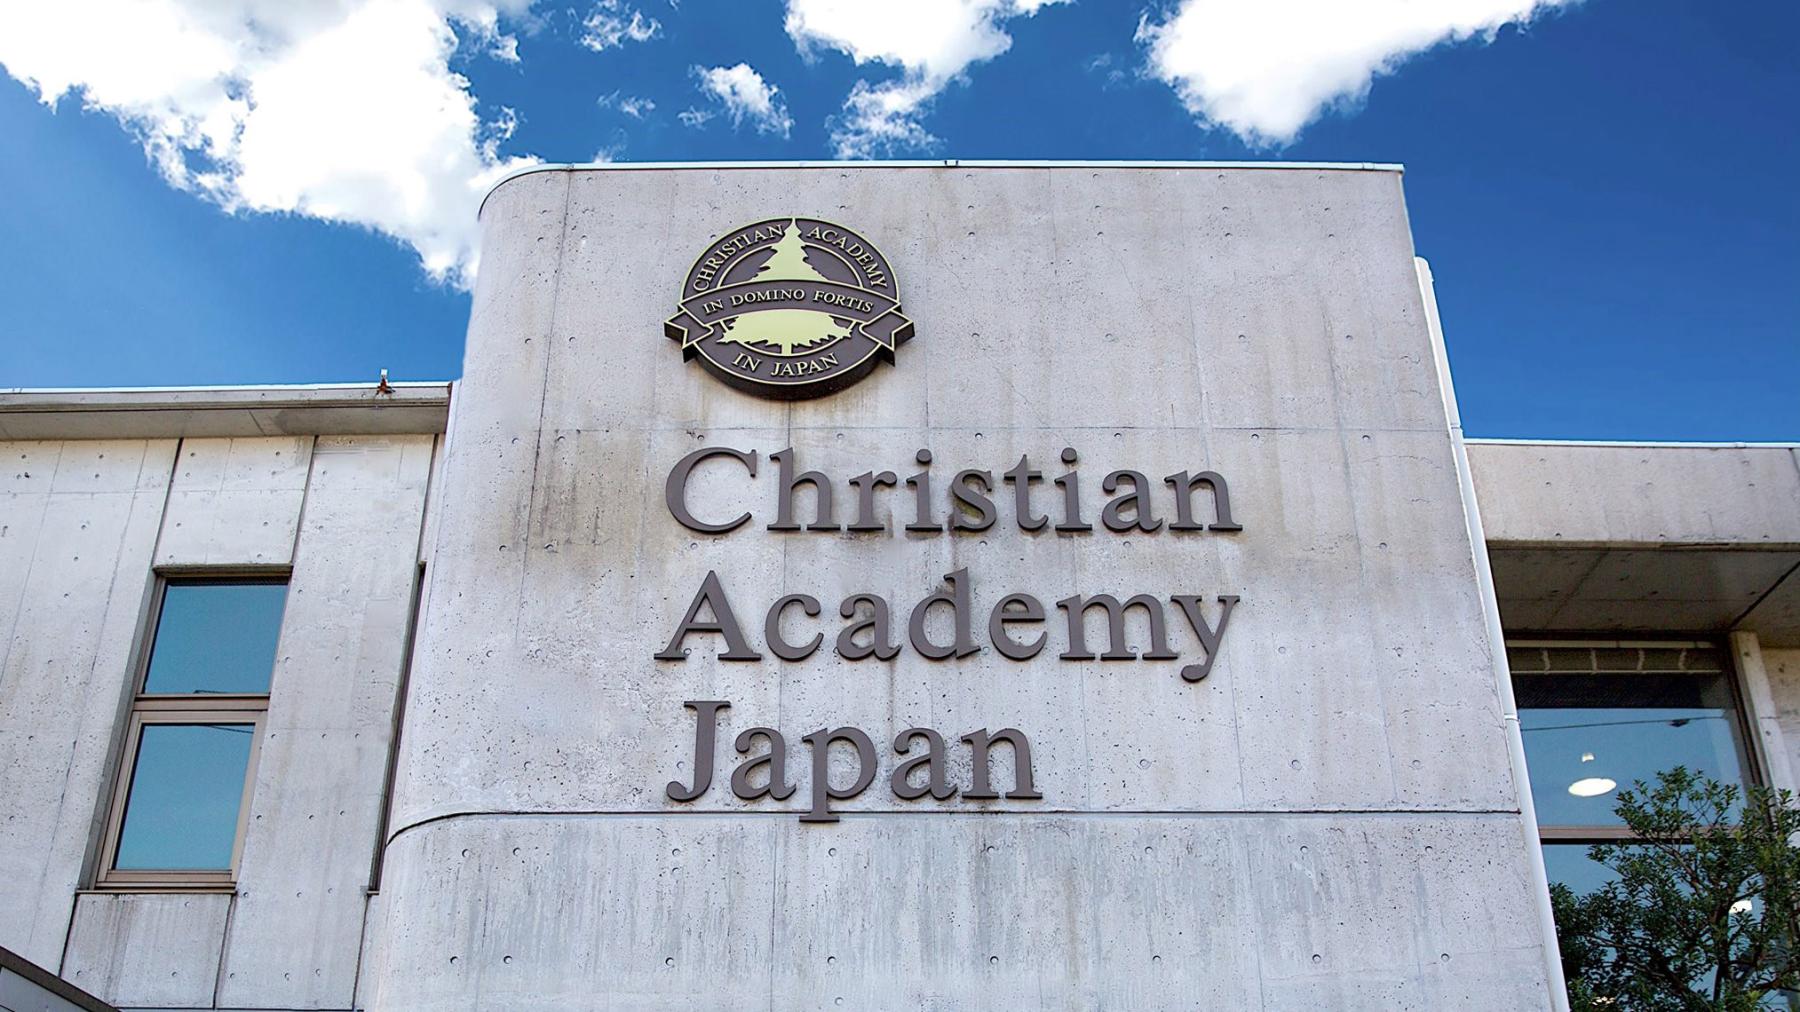 Christian Academy Japan